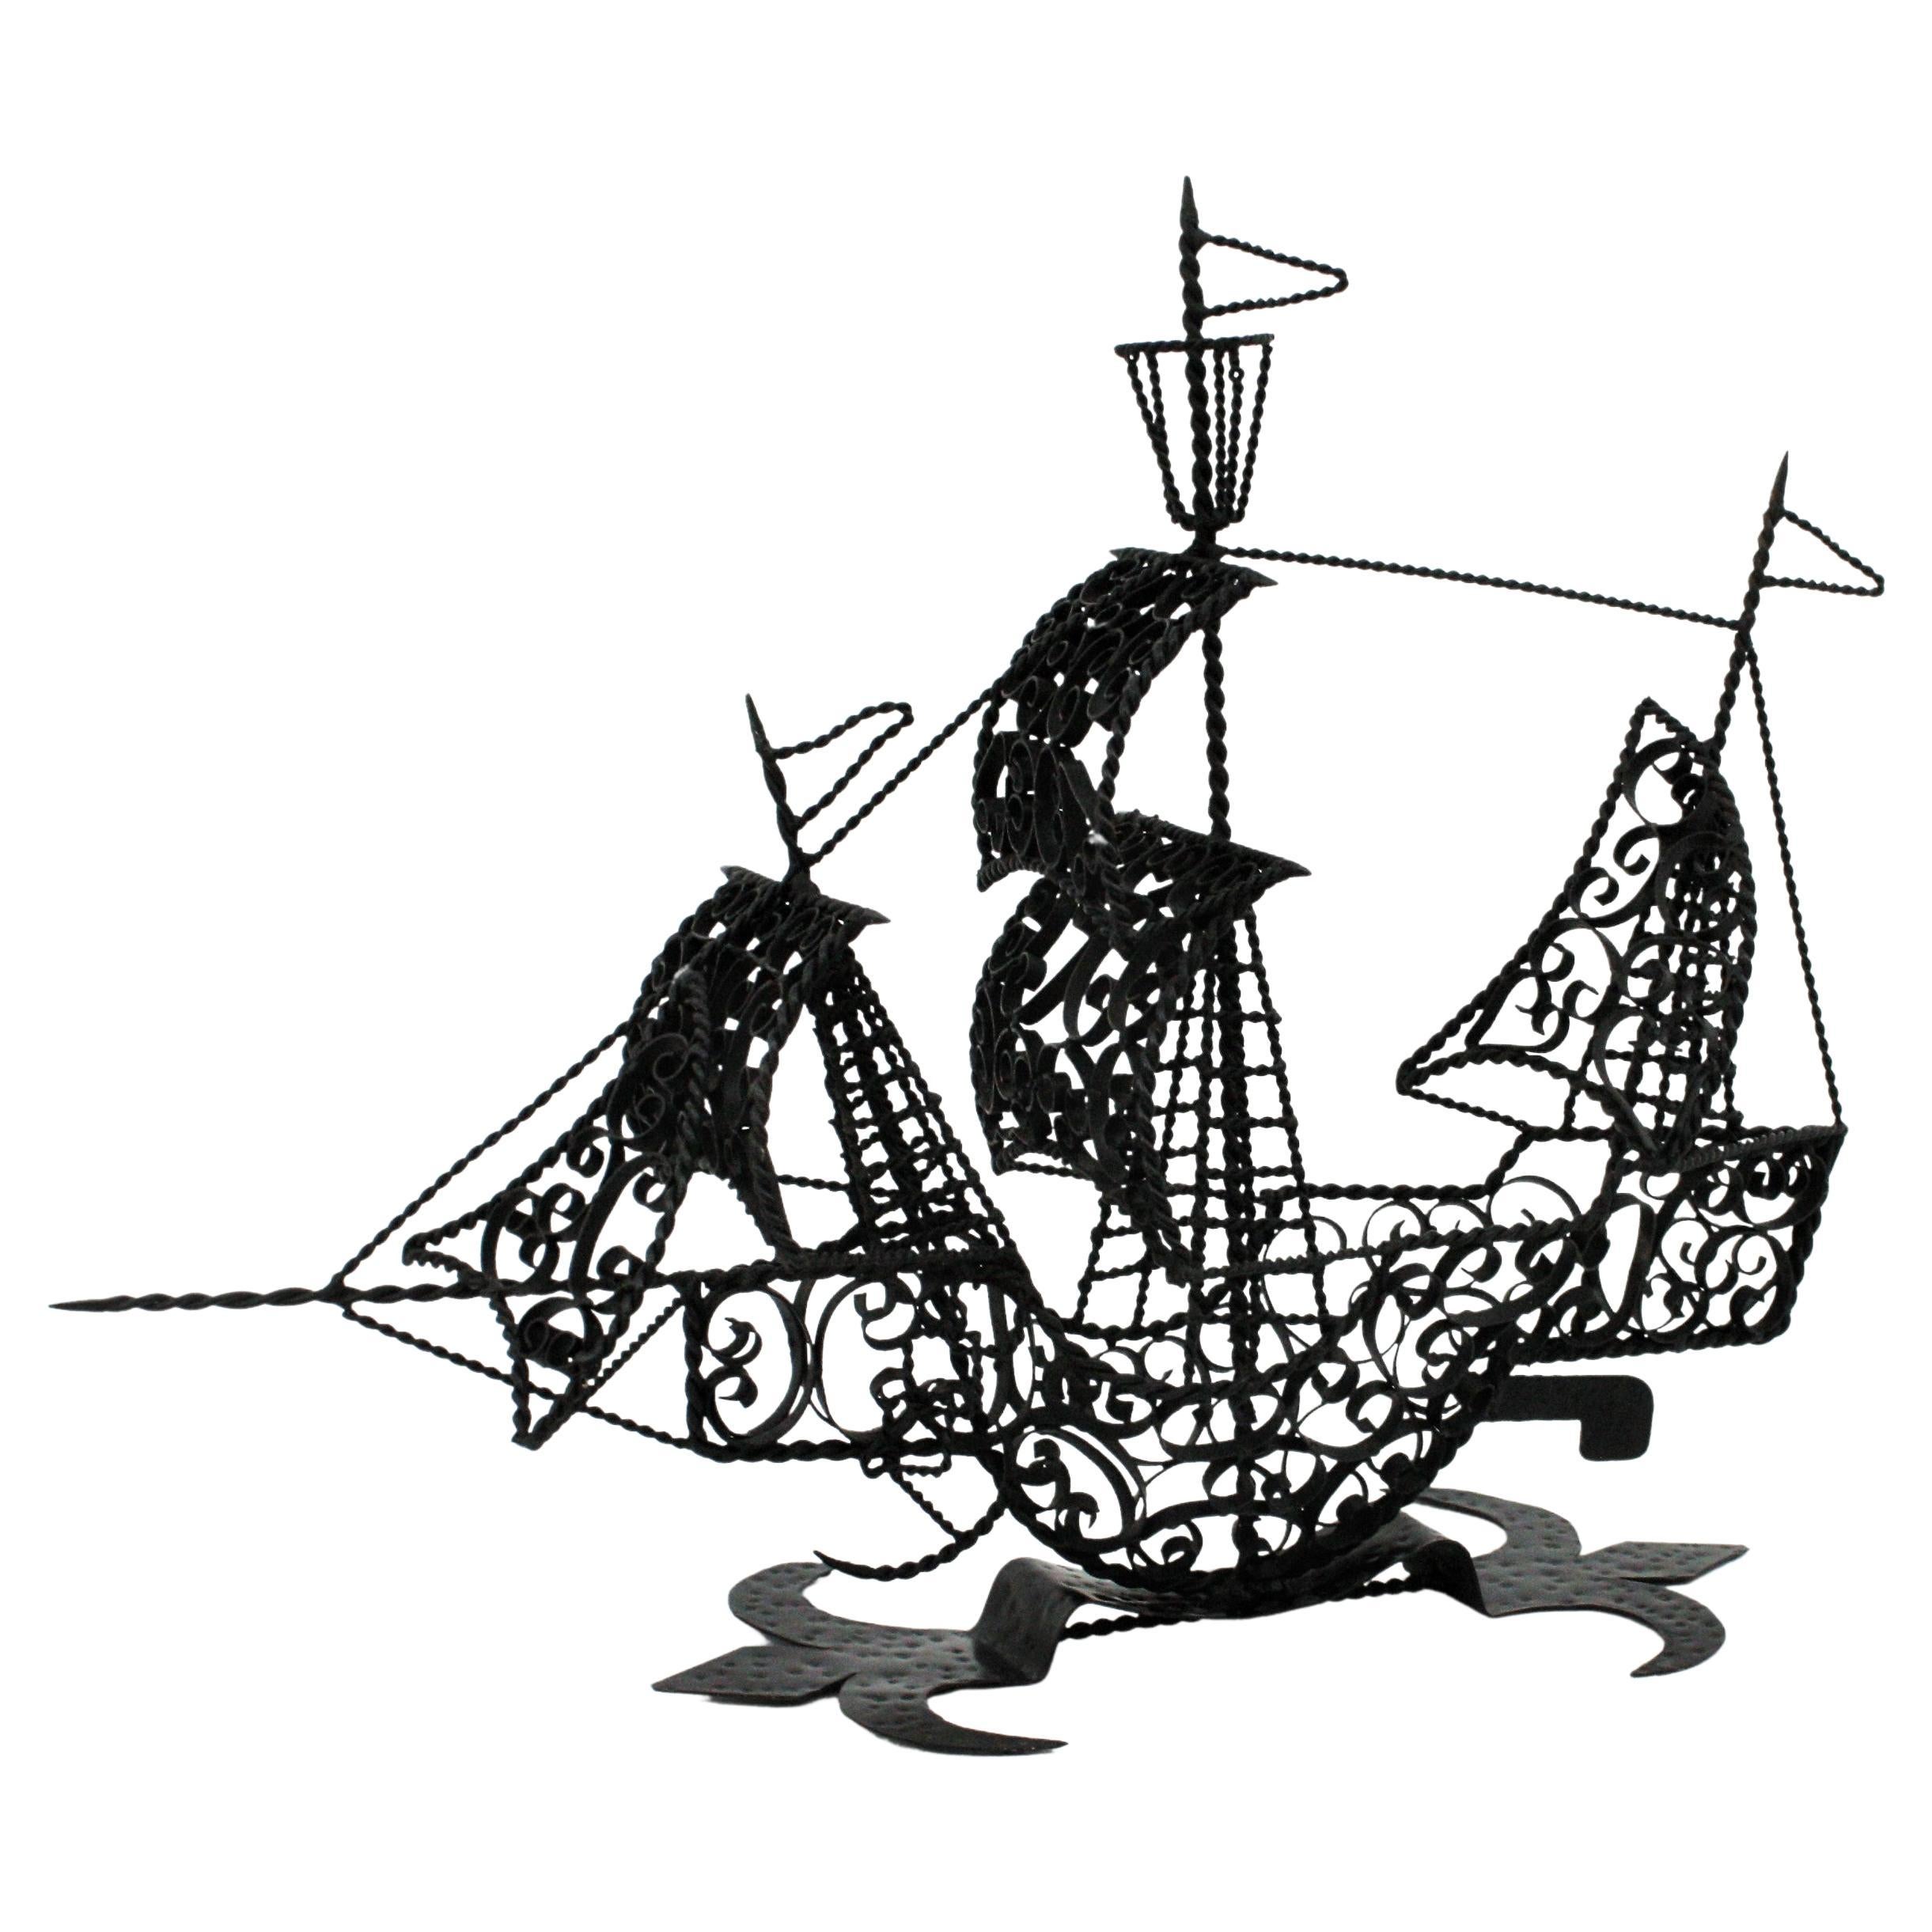 Sculpture de caravelle / galion espagnol en fer forgé. Espagne, années 1940-1950
Cette sculpture de voilier a été réalisée à la main en Espagne au milieu du XXe siècle. Le navire est orné d'un riche décor de volutes, de ferronnerie et de fils